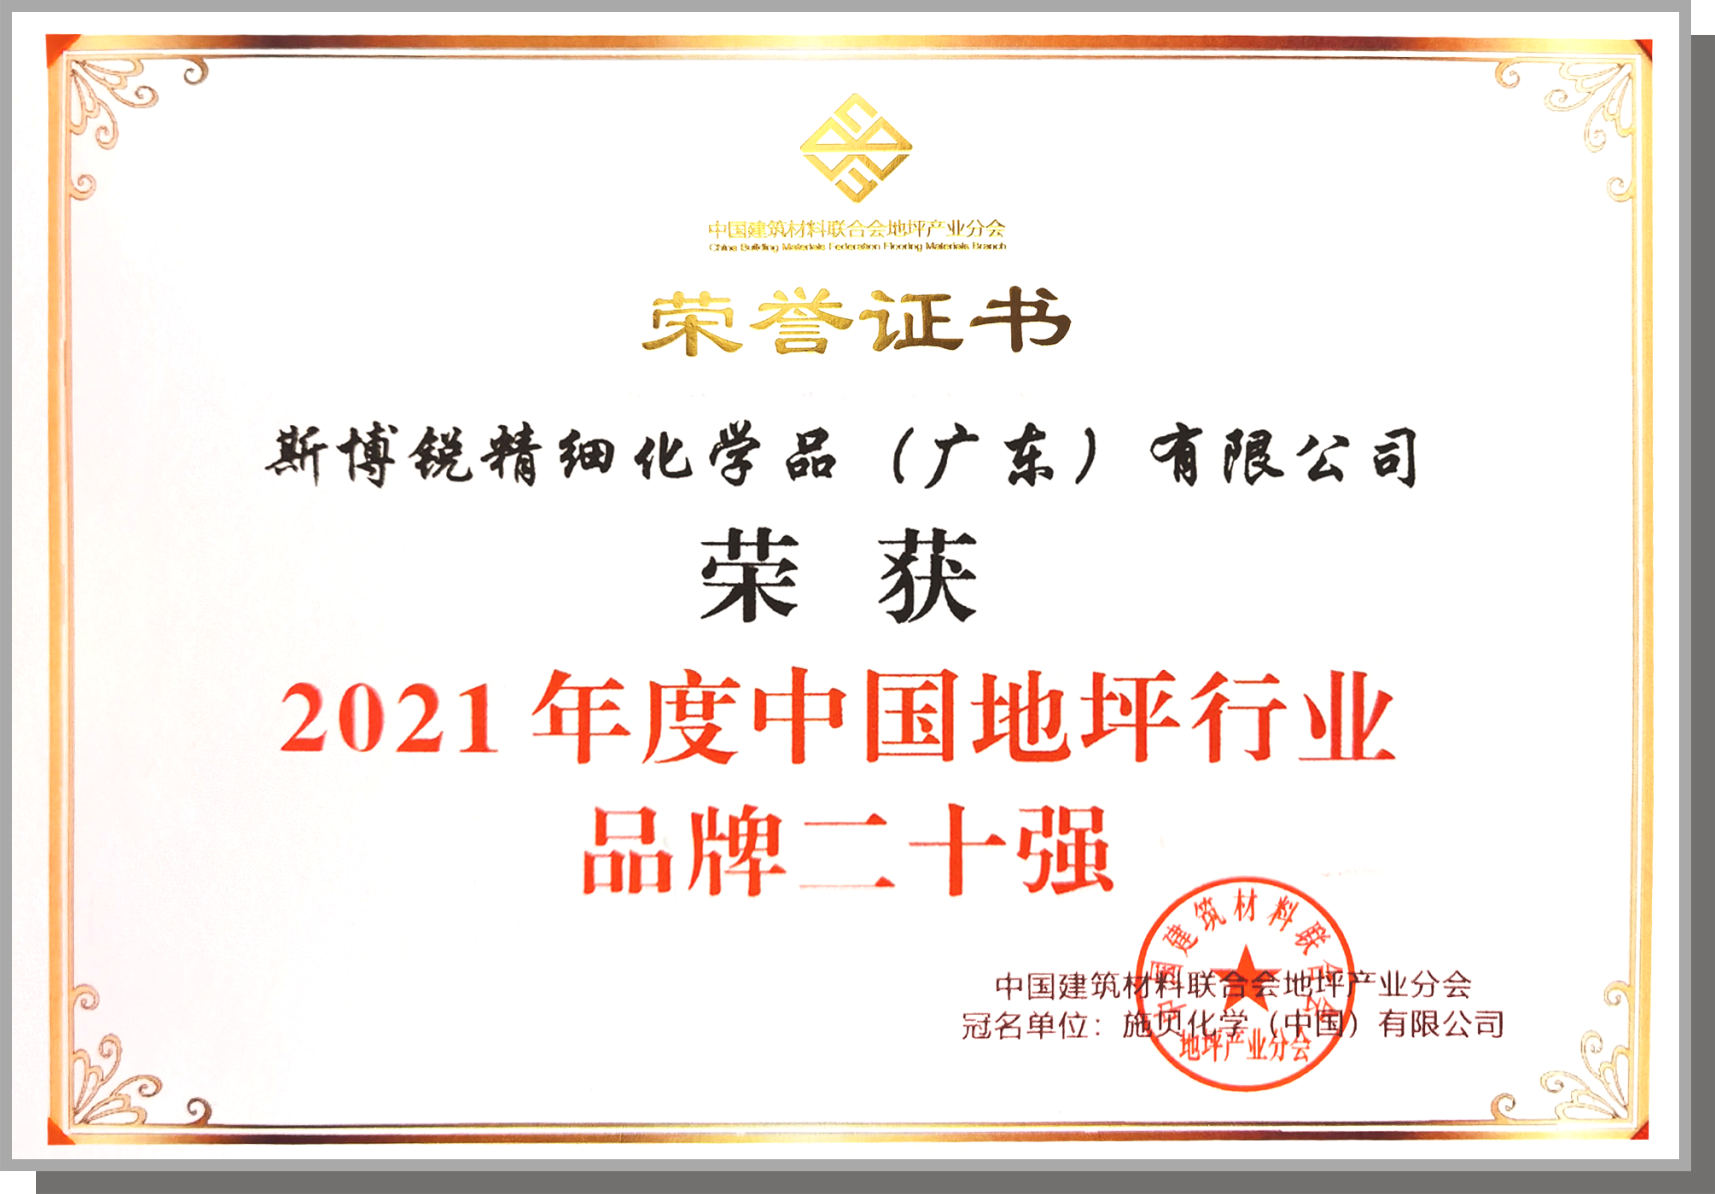 2021年度中国地坪行业品牌二十强-模版.png